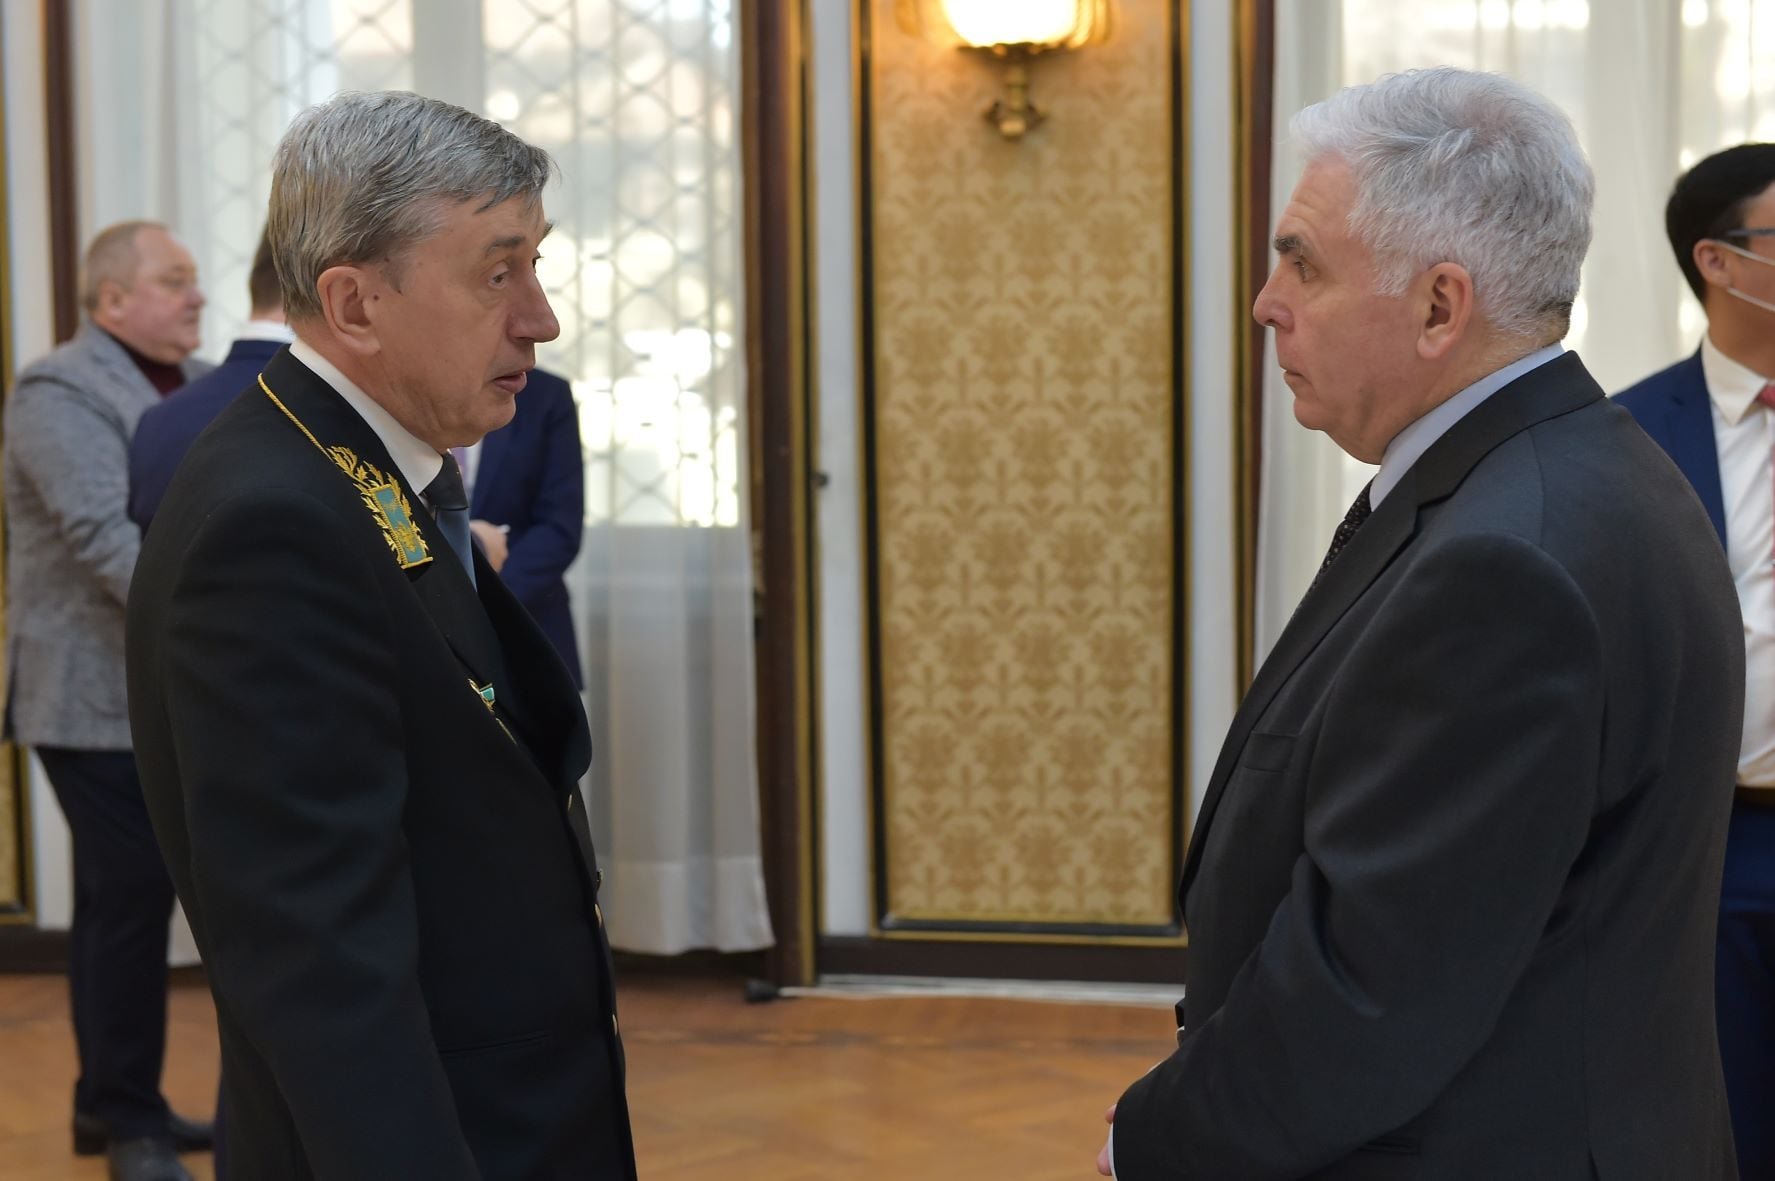  Premieră, după invadarea Ucrainei: ambasadorul Rusiei la București face o conferință de presă. Întrebările se trimit cu trei zile înainte